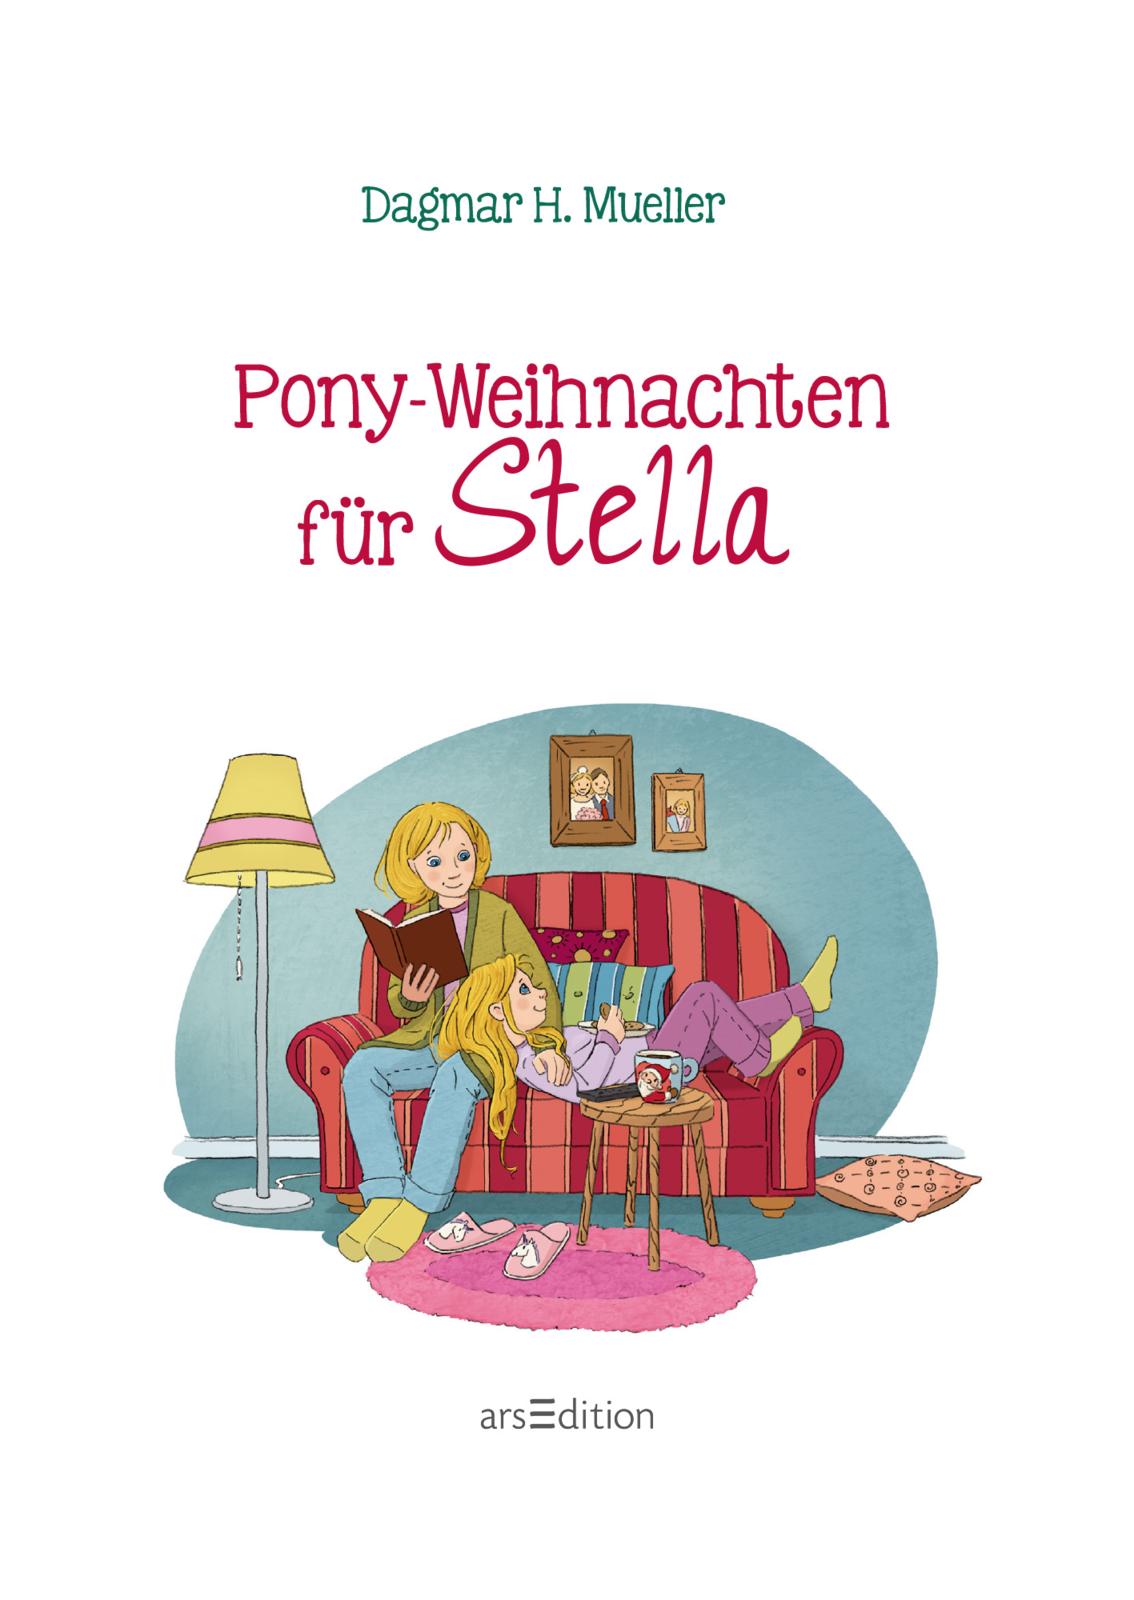 Pony-Weihnachten für Stella